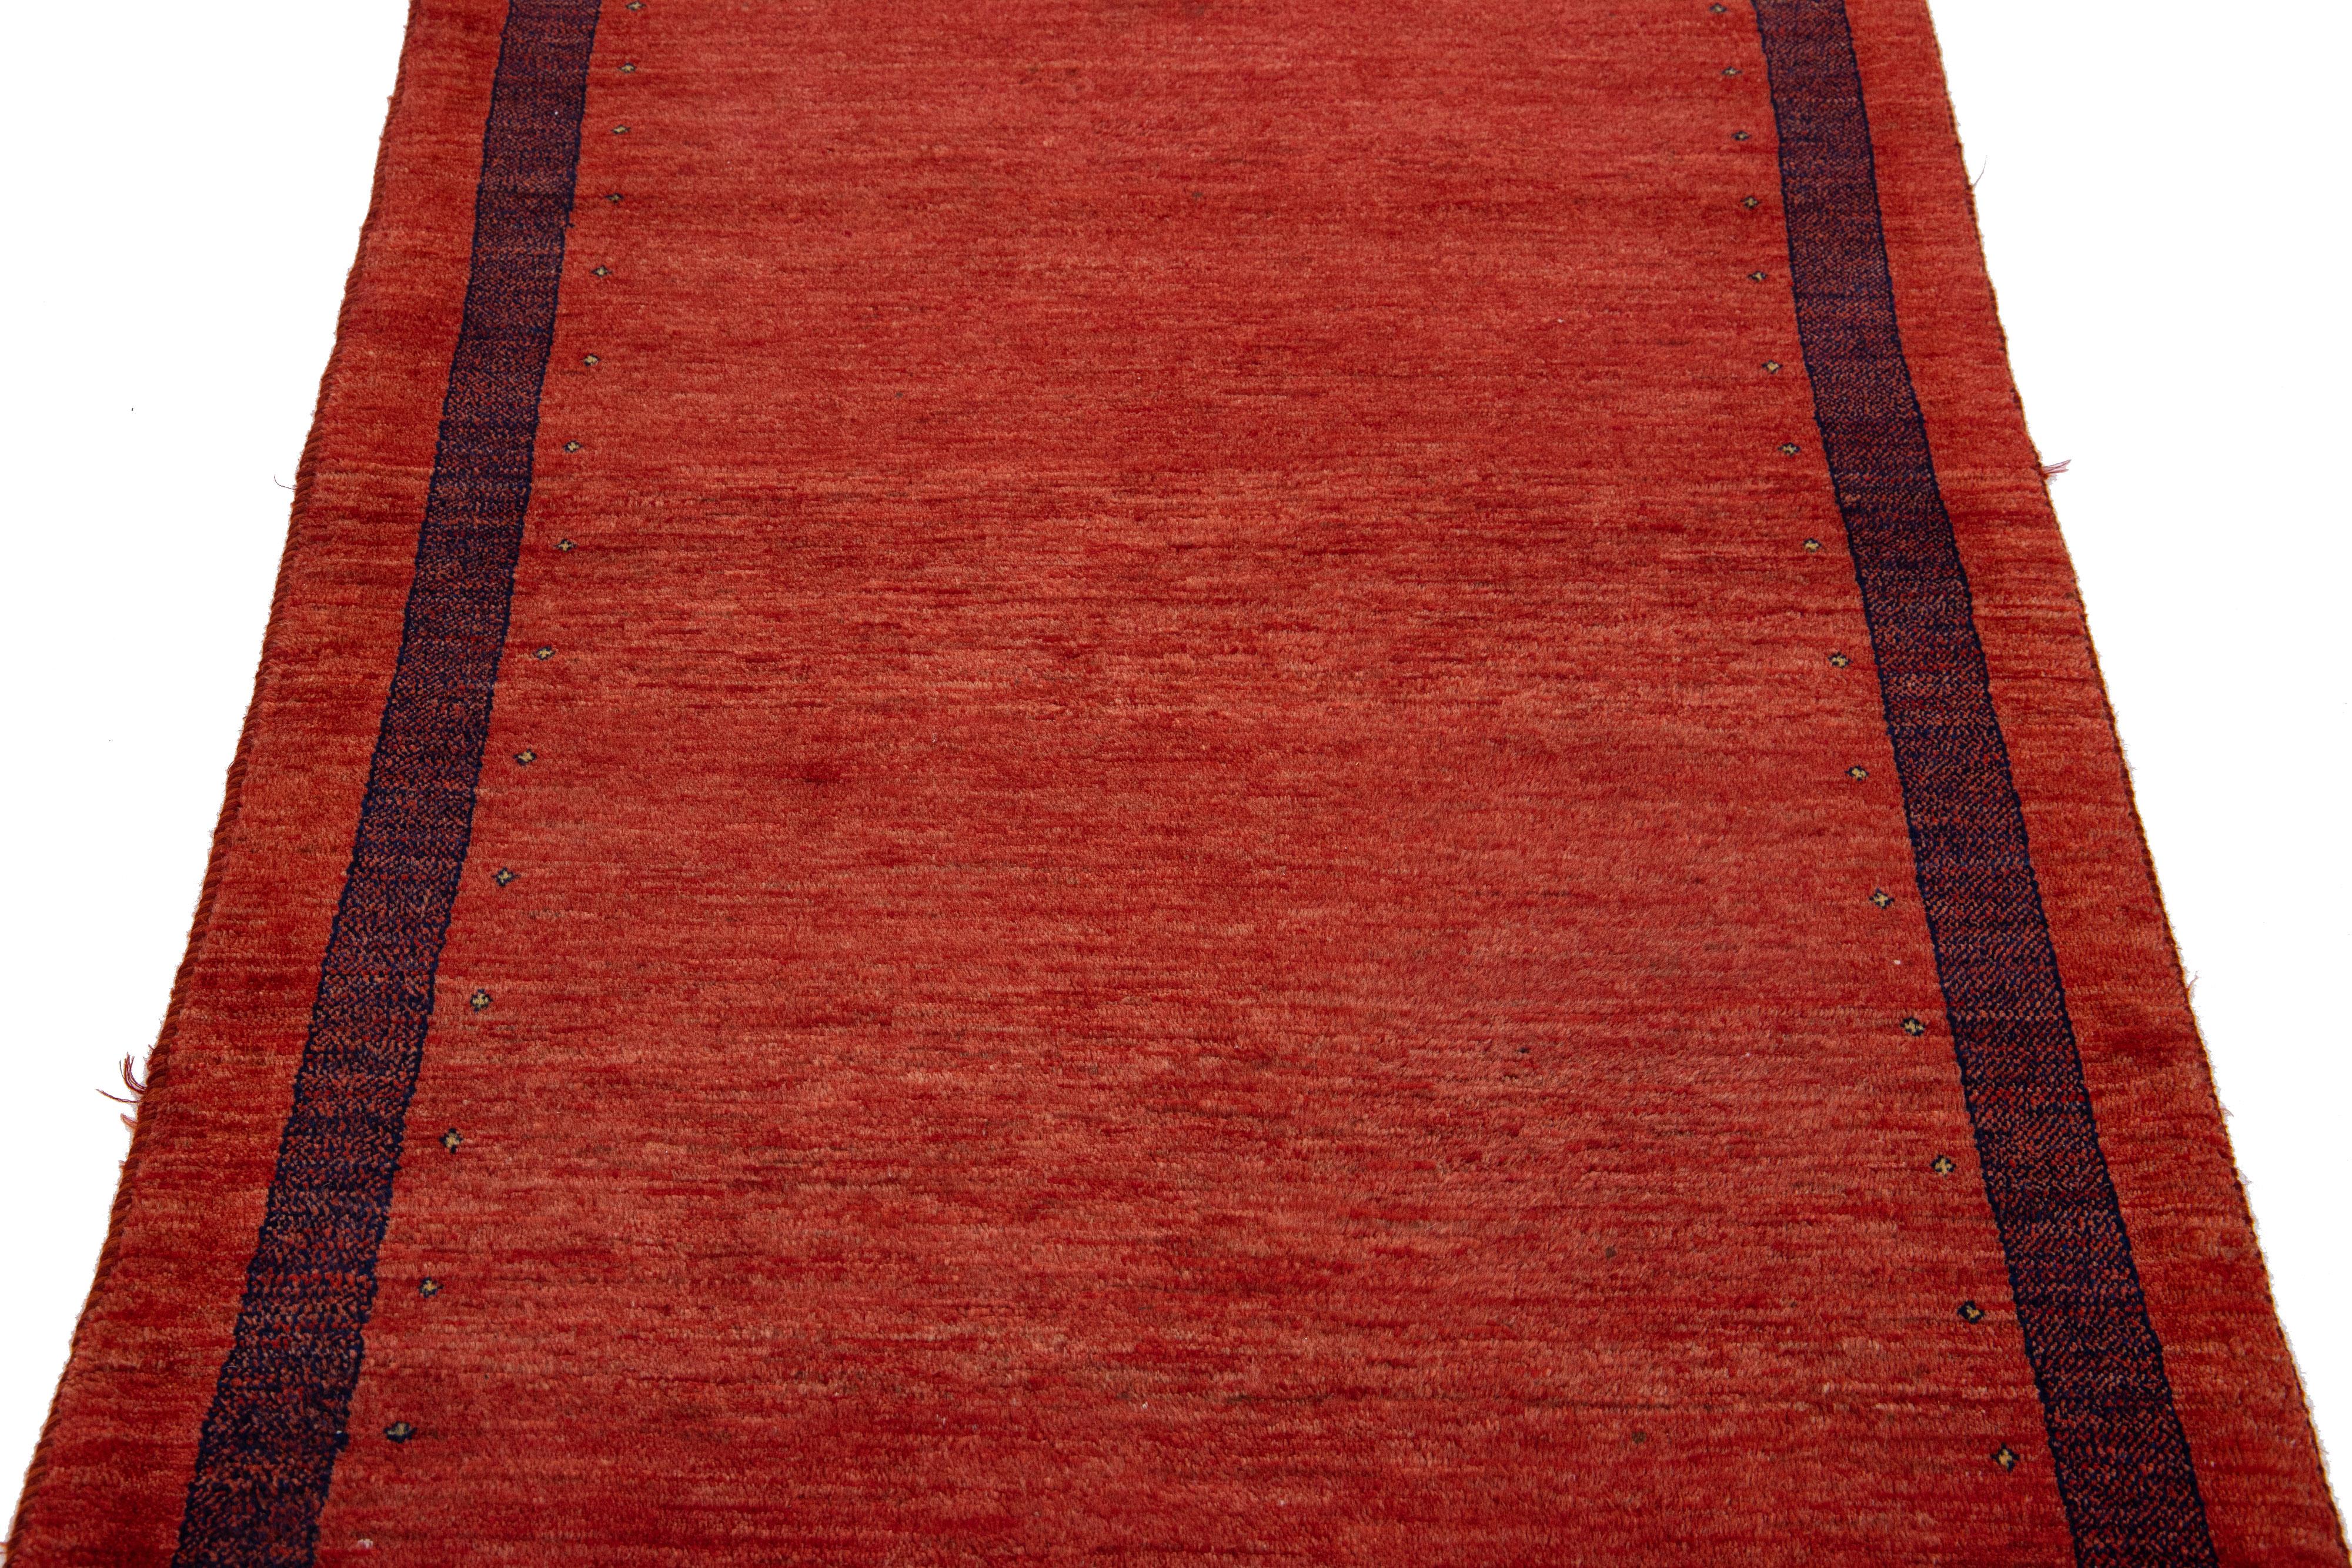 Magnifique tapis moderne en laine tissée à la main de style Gabbeh avec un champ de couleur rouge. Ce tapis persan présente un superbe design minimaliste avec des accents noirs.

Ce tapis mesure : 3'6